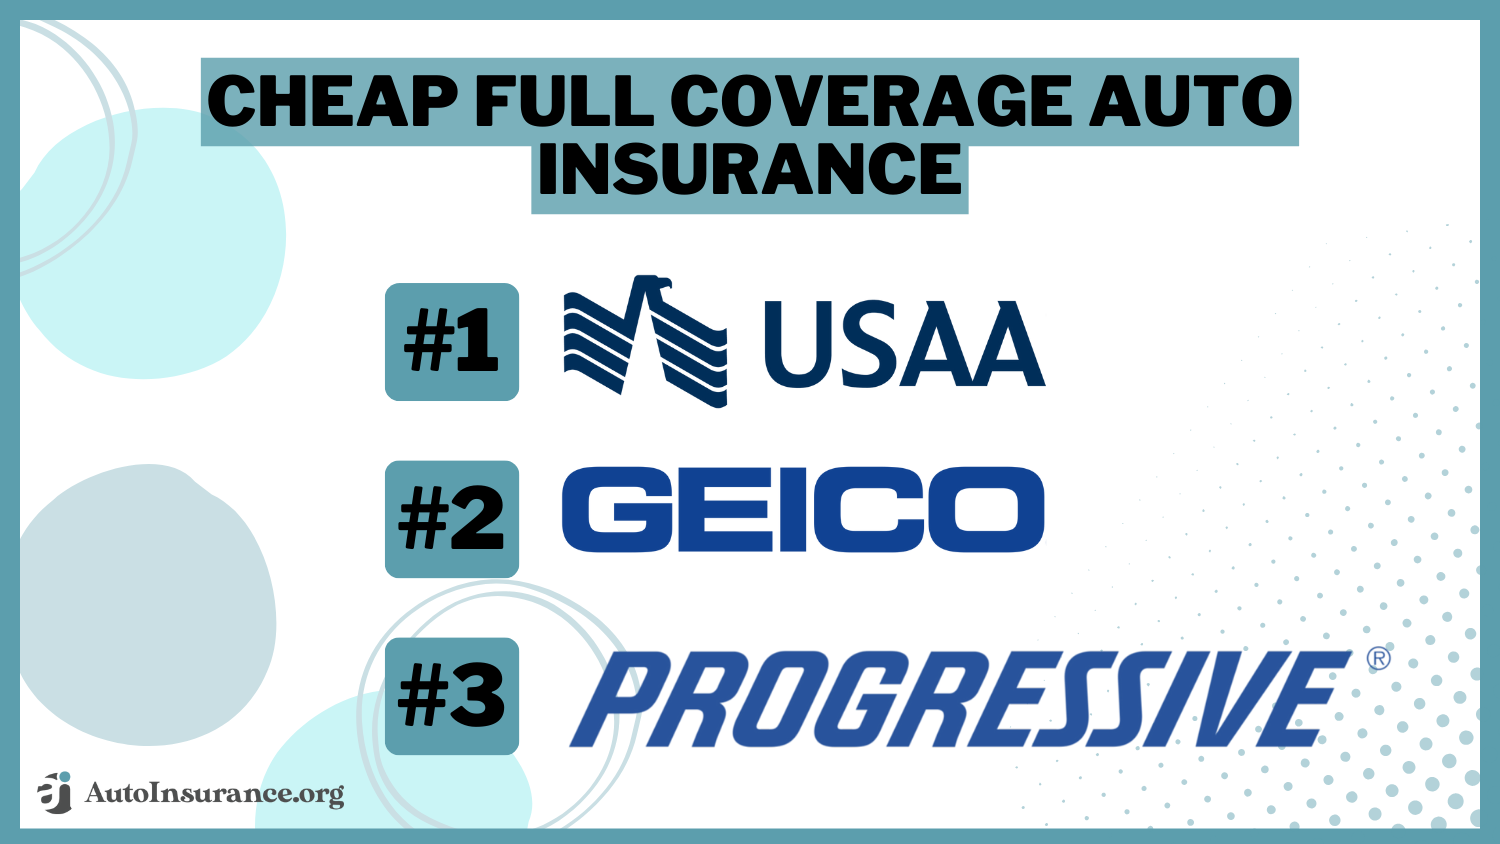 Cheap Full Coverage Auto Insurance: USAA, Geico, Progressive